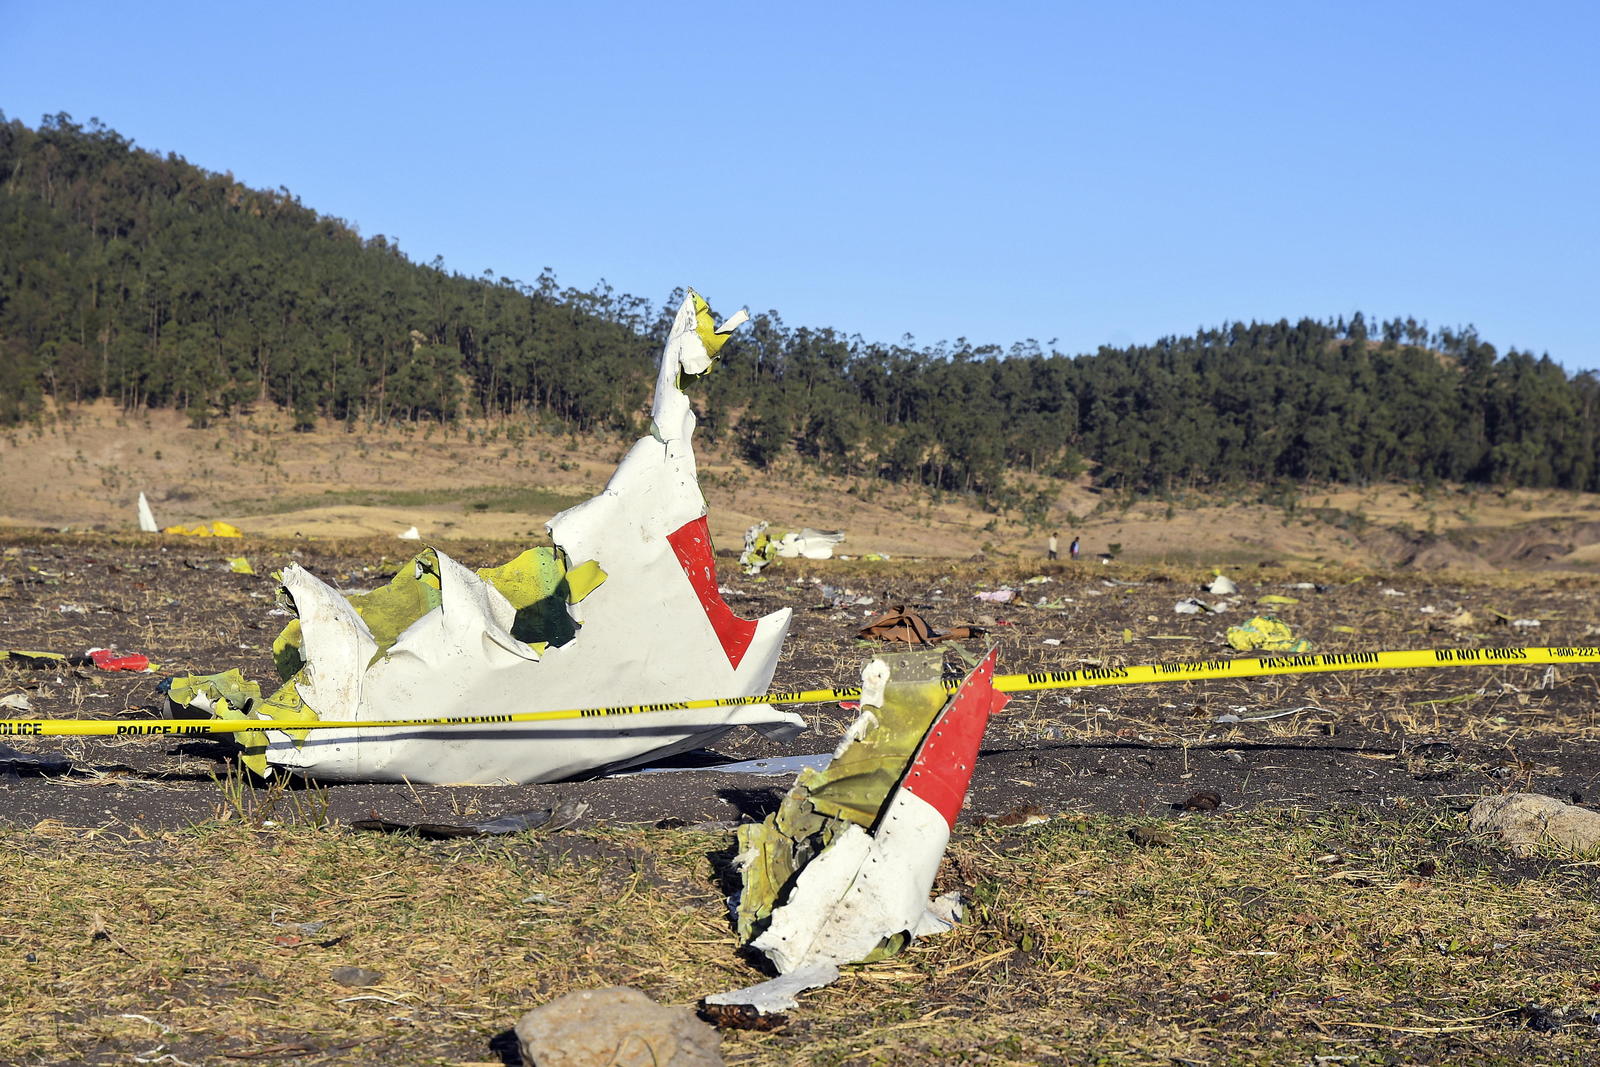 El aparato se estrelló cerca del poblado de Tulu Fara, en las afueras de la ciudad de Bishoftu, Etiopía. (EFE)